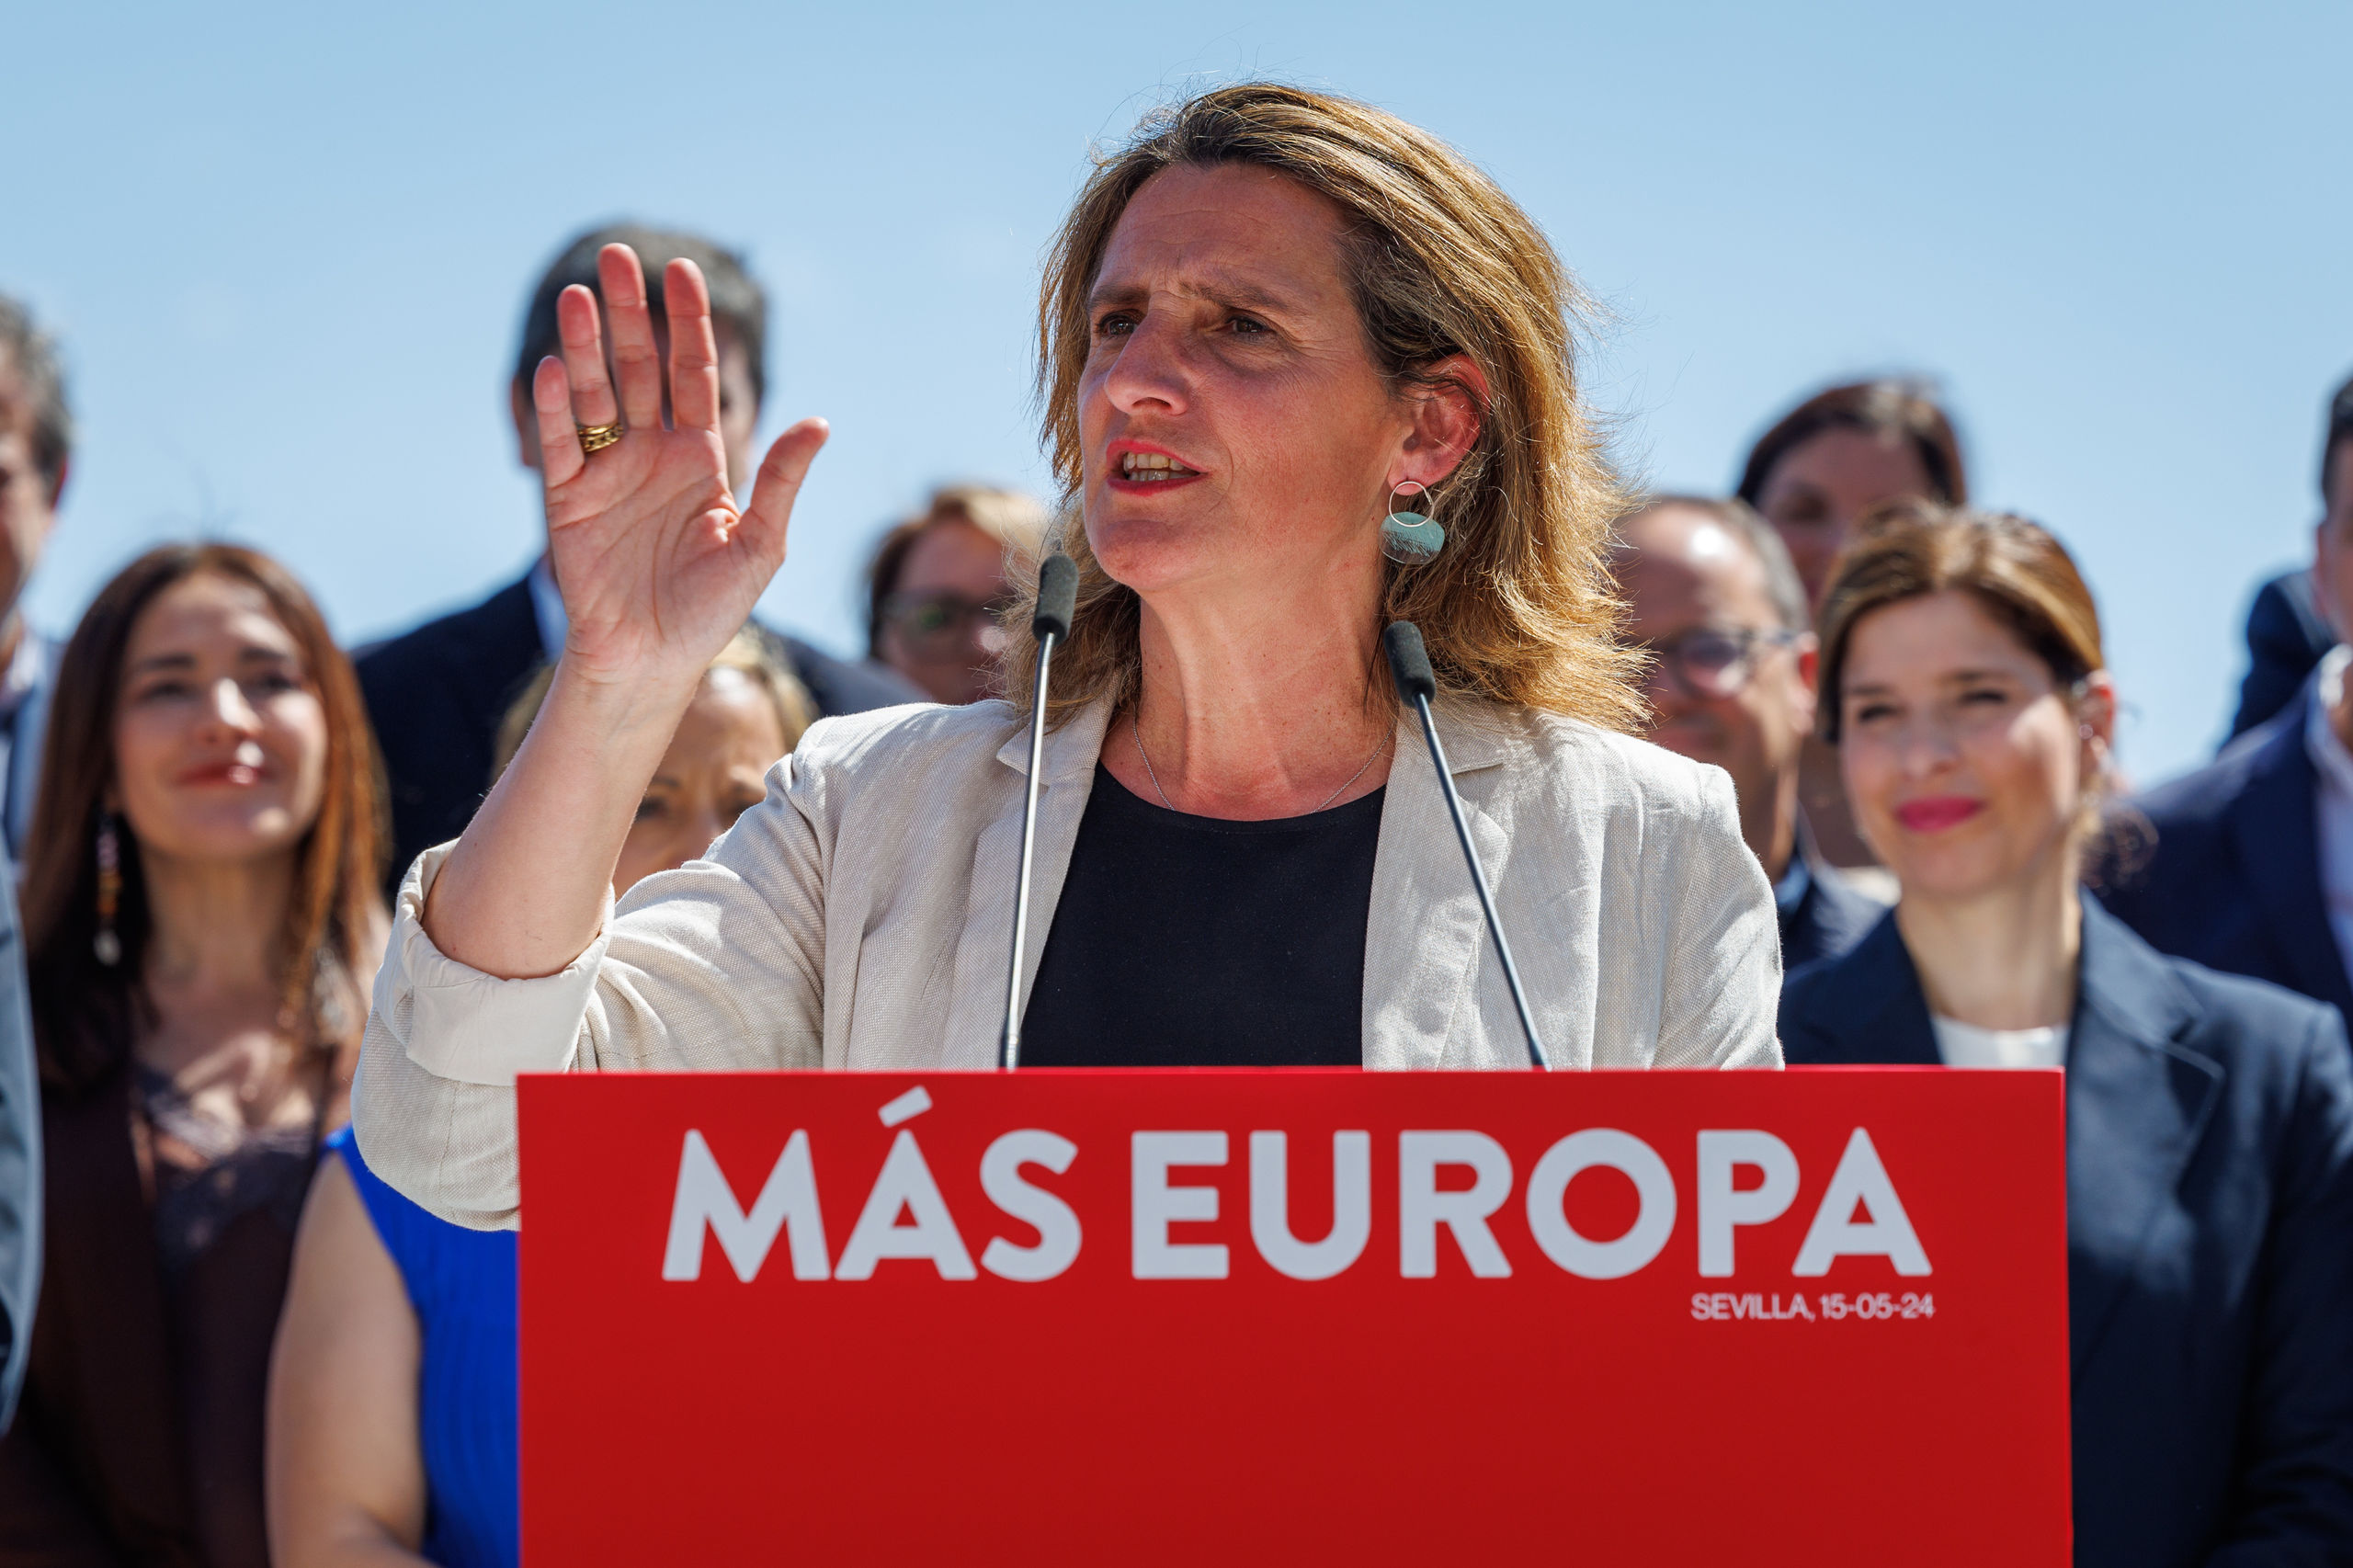 El PSOE prepara una campaña de gran polarización para las elecciones europeas